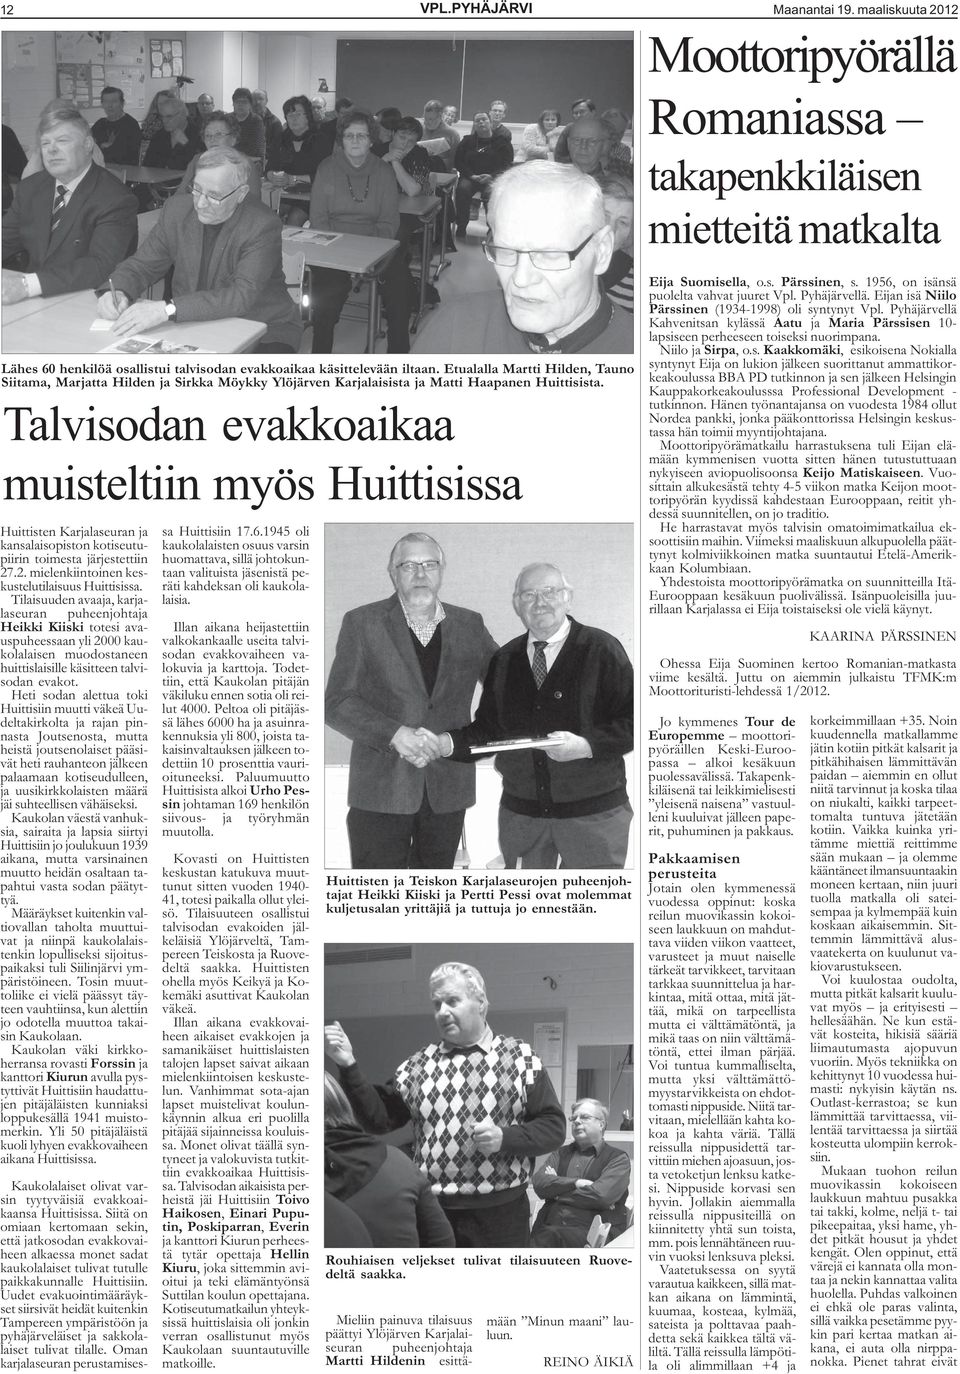 Talvisodan evakkoaikaa muisteltiin myös Huittisissa Huittisten Karjalaseuran ja kansalaisopiston kotiseutupiirin toimesta järjestettiin 27.2. mielenkiintoinen keskustelutilaisuus Huittisissa.